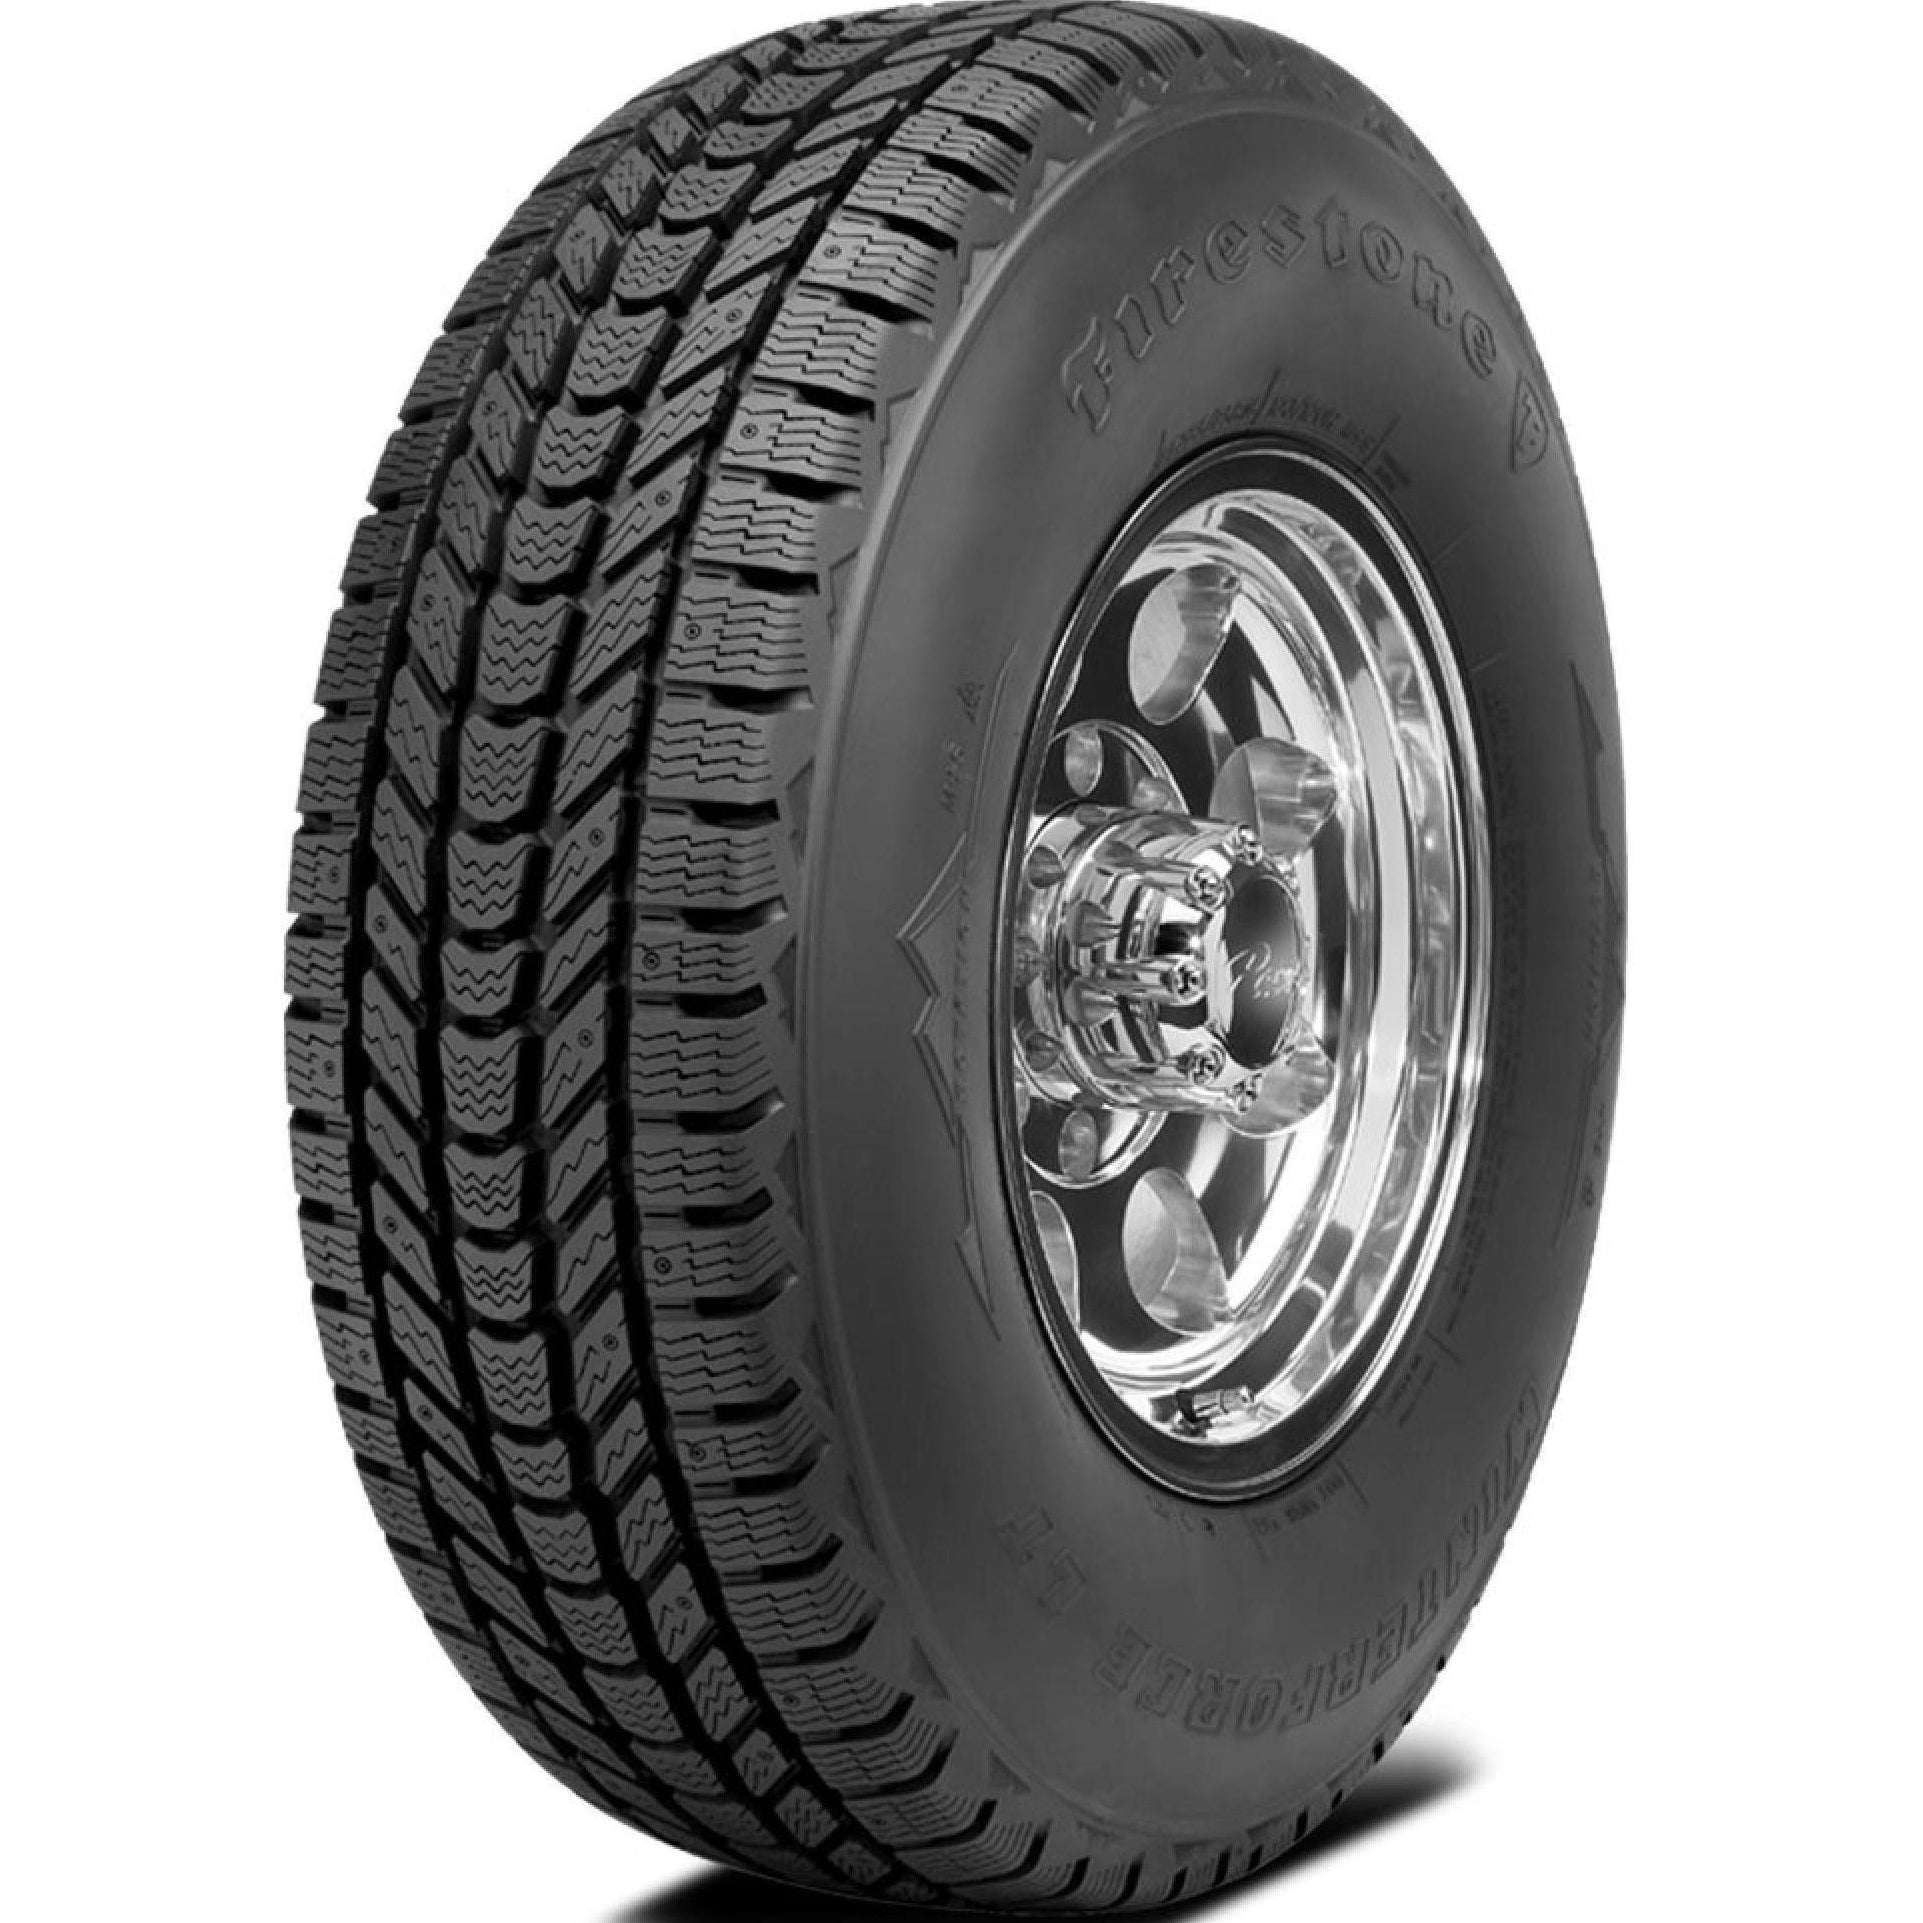 FIRESTONE WINTERFORCE LT LT225/75R16 (29.3X8.9R 16) Tires